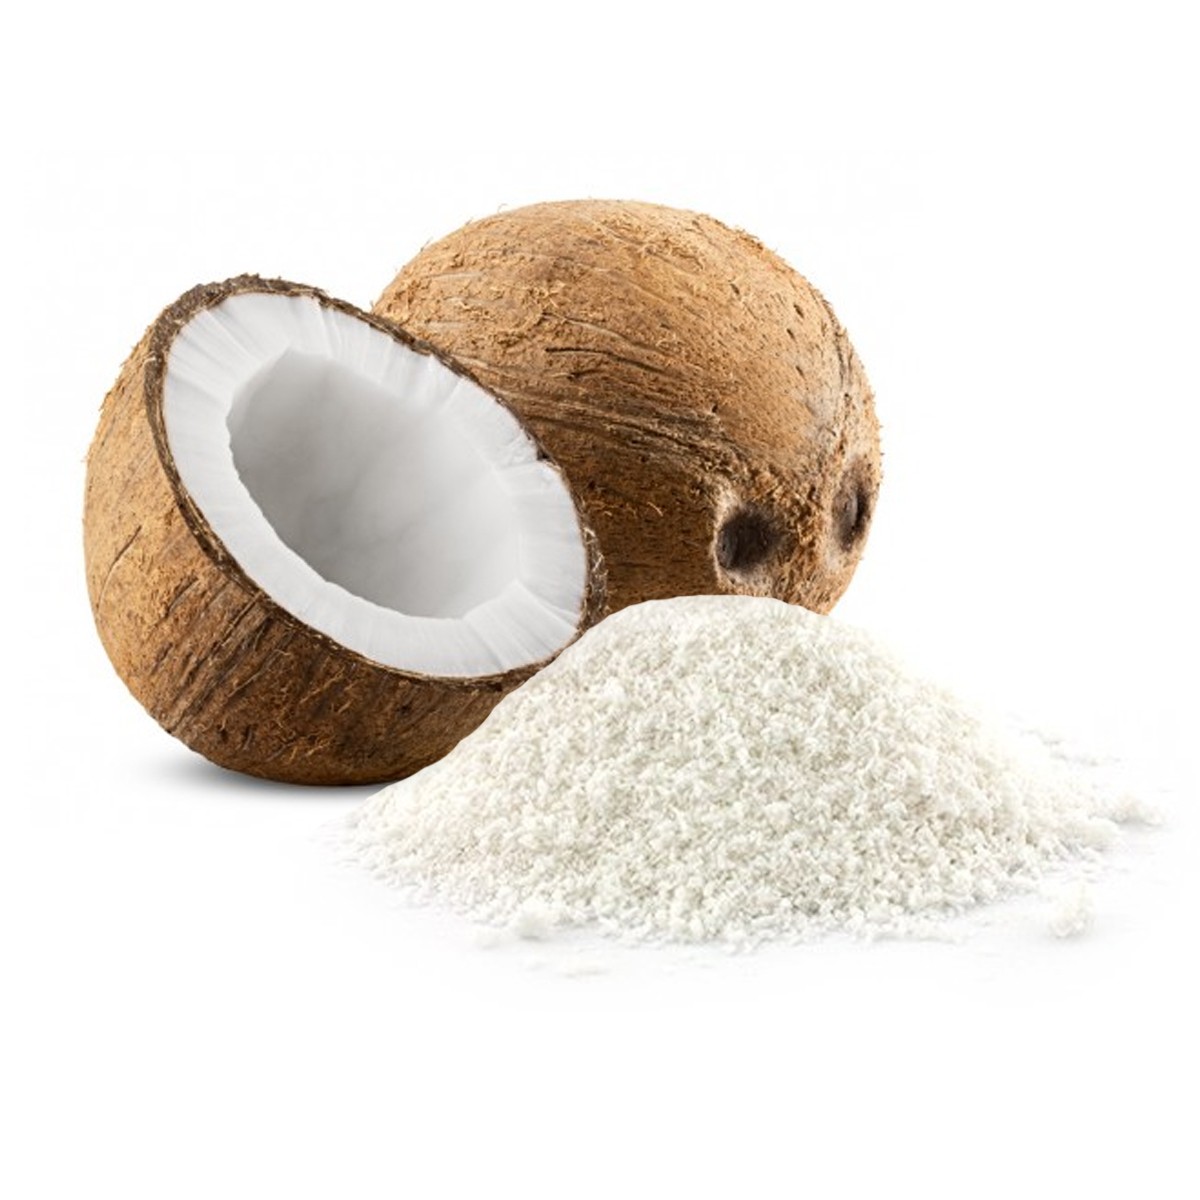 Noix de coco râpée (200g)